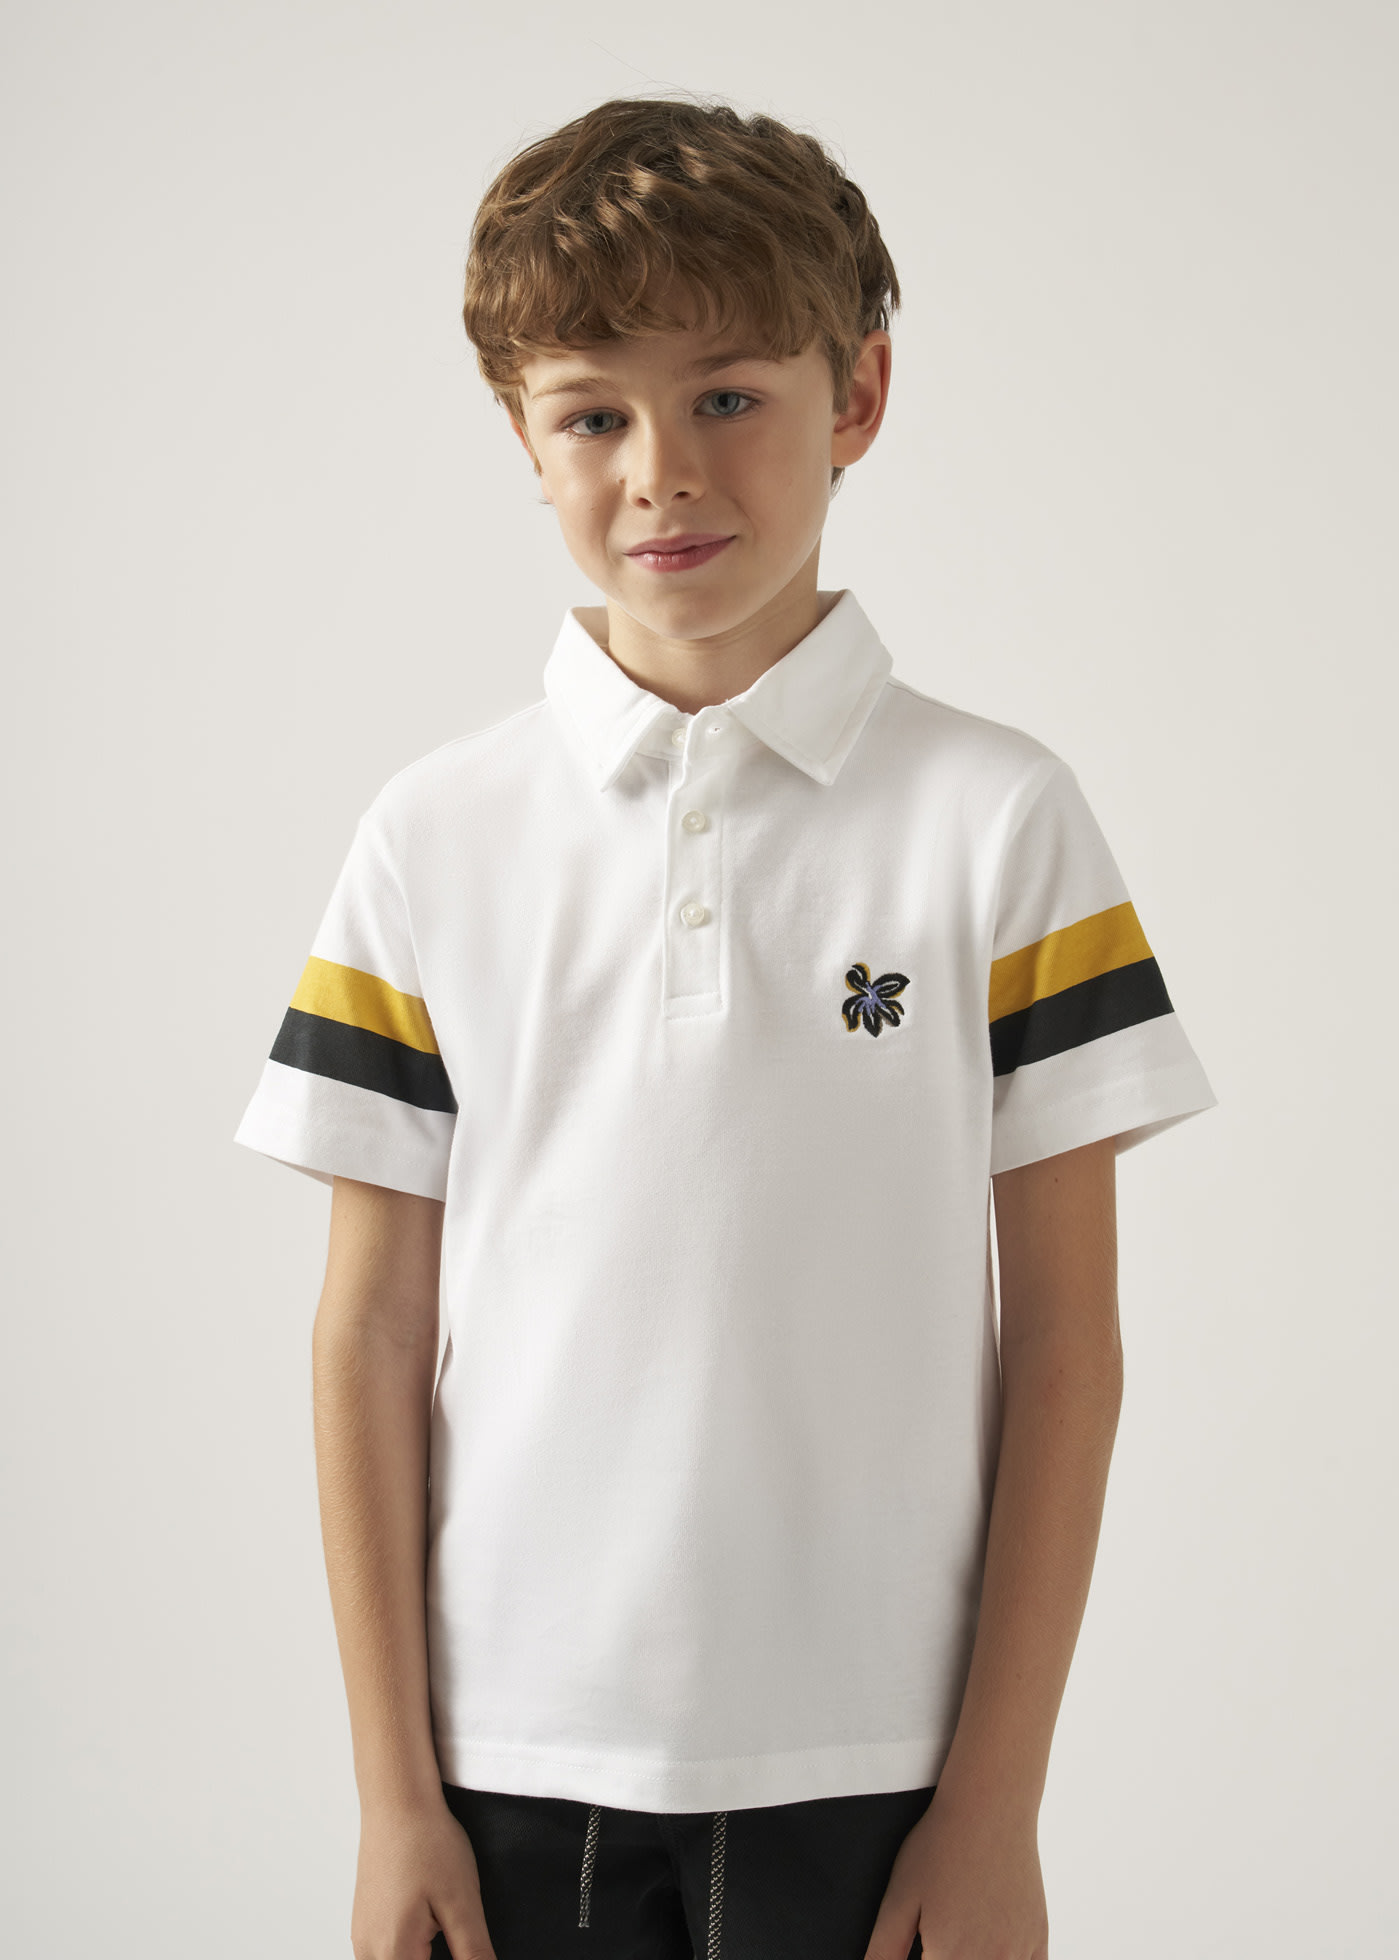 Koszulki Polo dla Chłopców od 2 do 16 lat